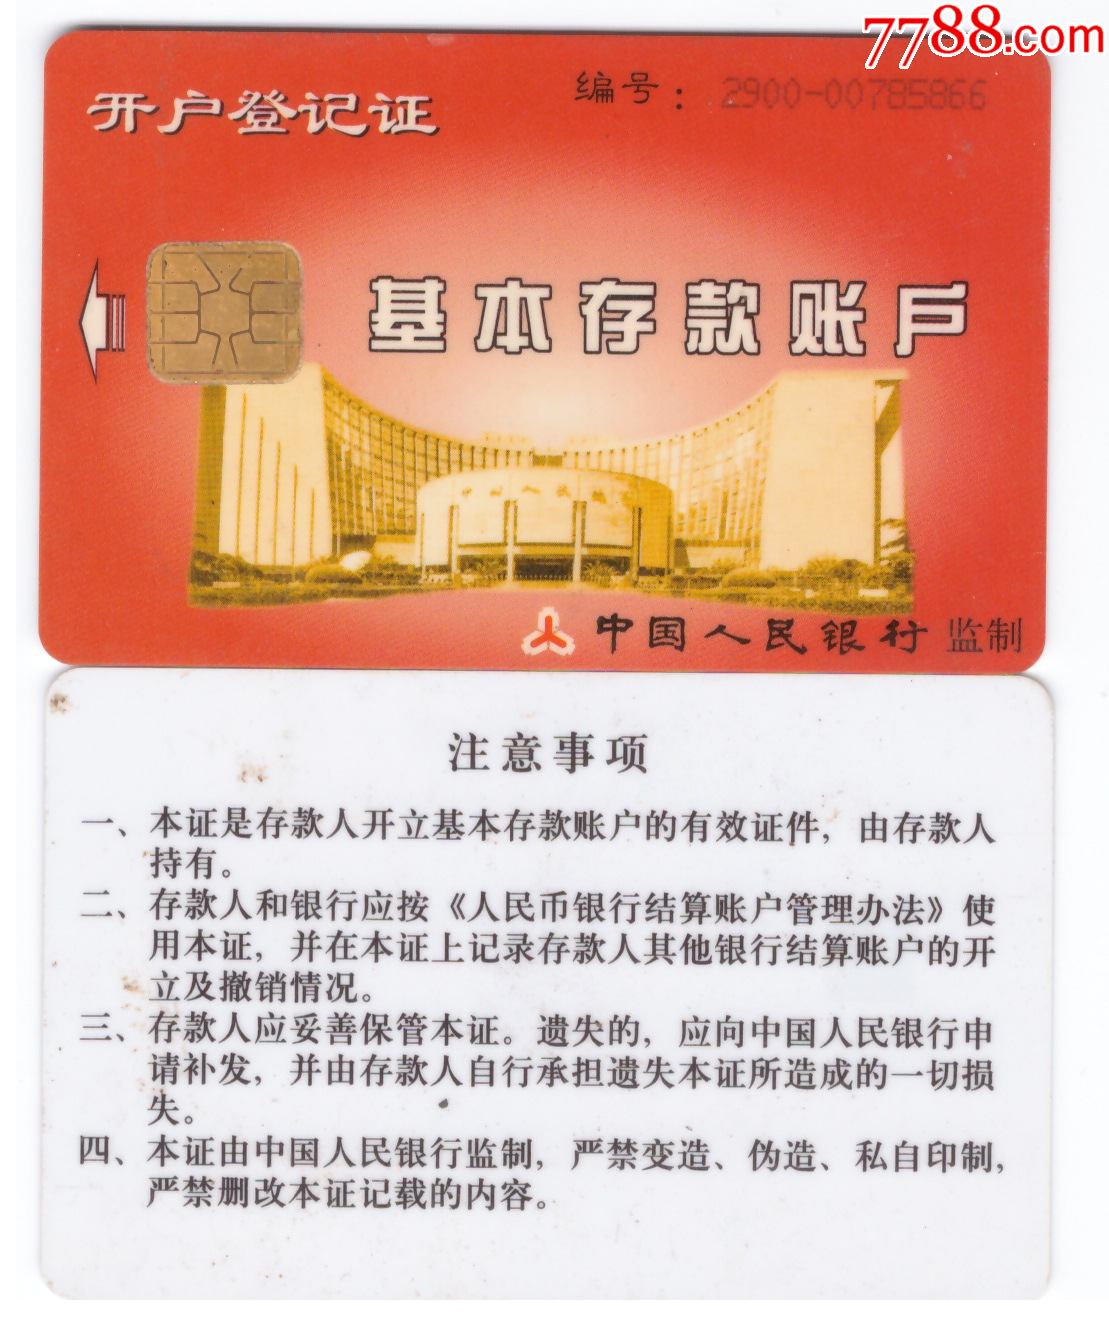 杂卡中国人民银行基本存款账户ic卡